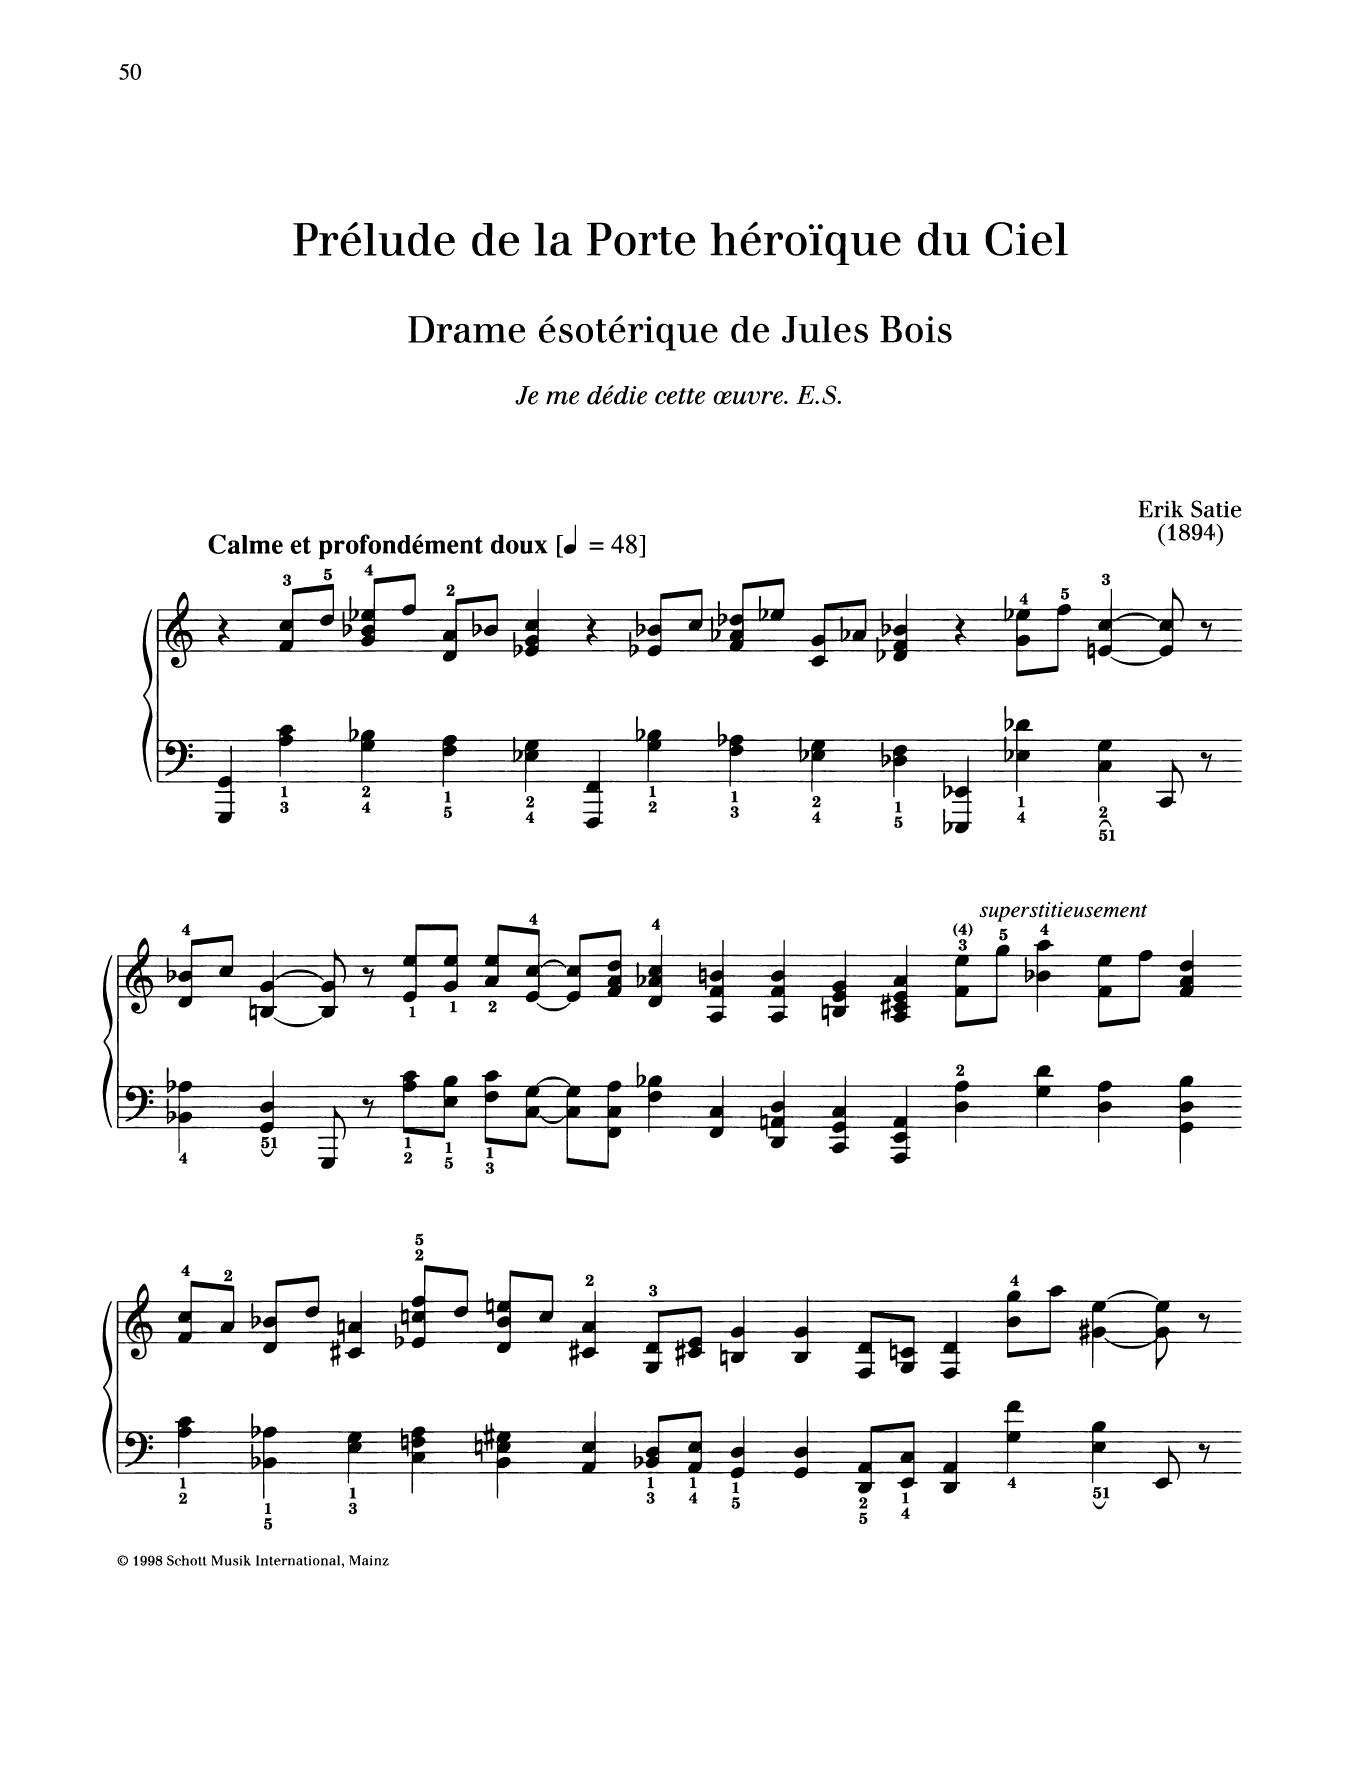 Erik Satie Prelude de la Porte heroique du Ciel Sheet Music Notes & Chords for Piano Solo - Download or Print PDF